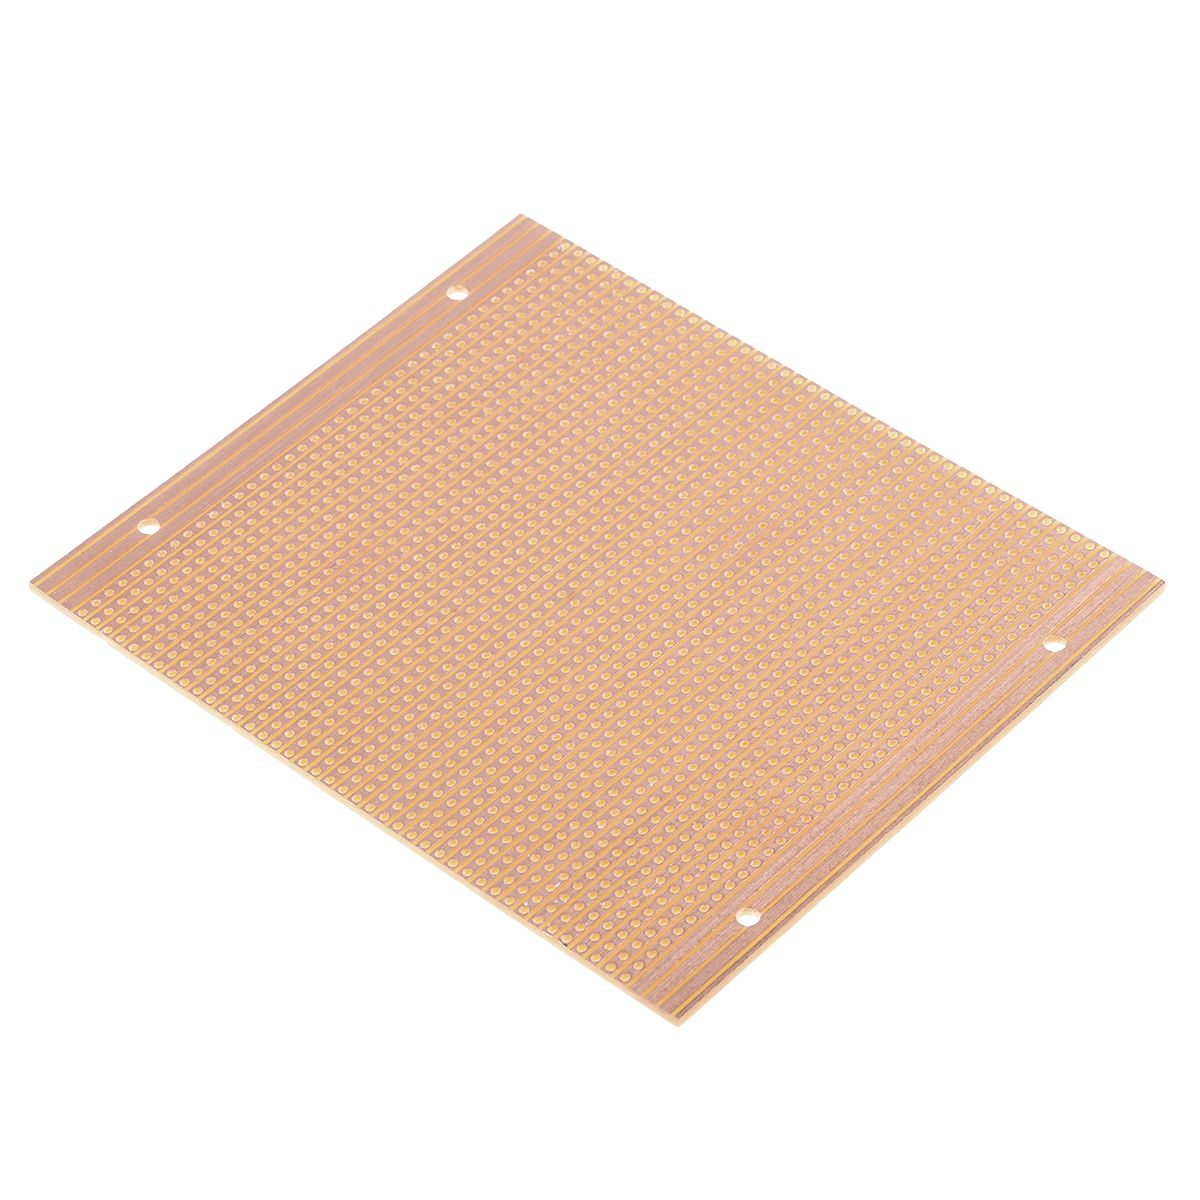 01-0021, Single-Sided Stripboard 121.92 x 101.6mm